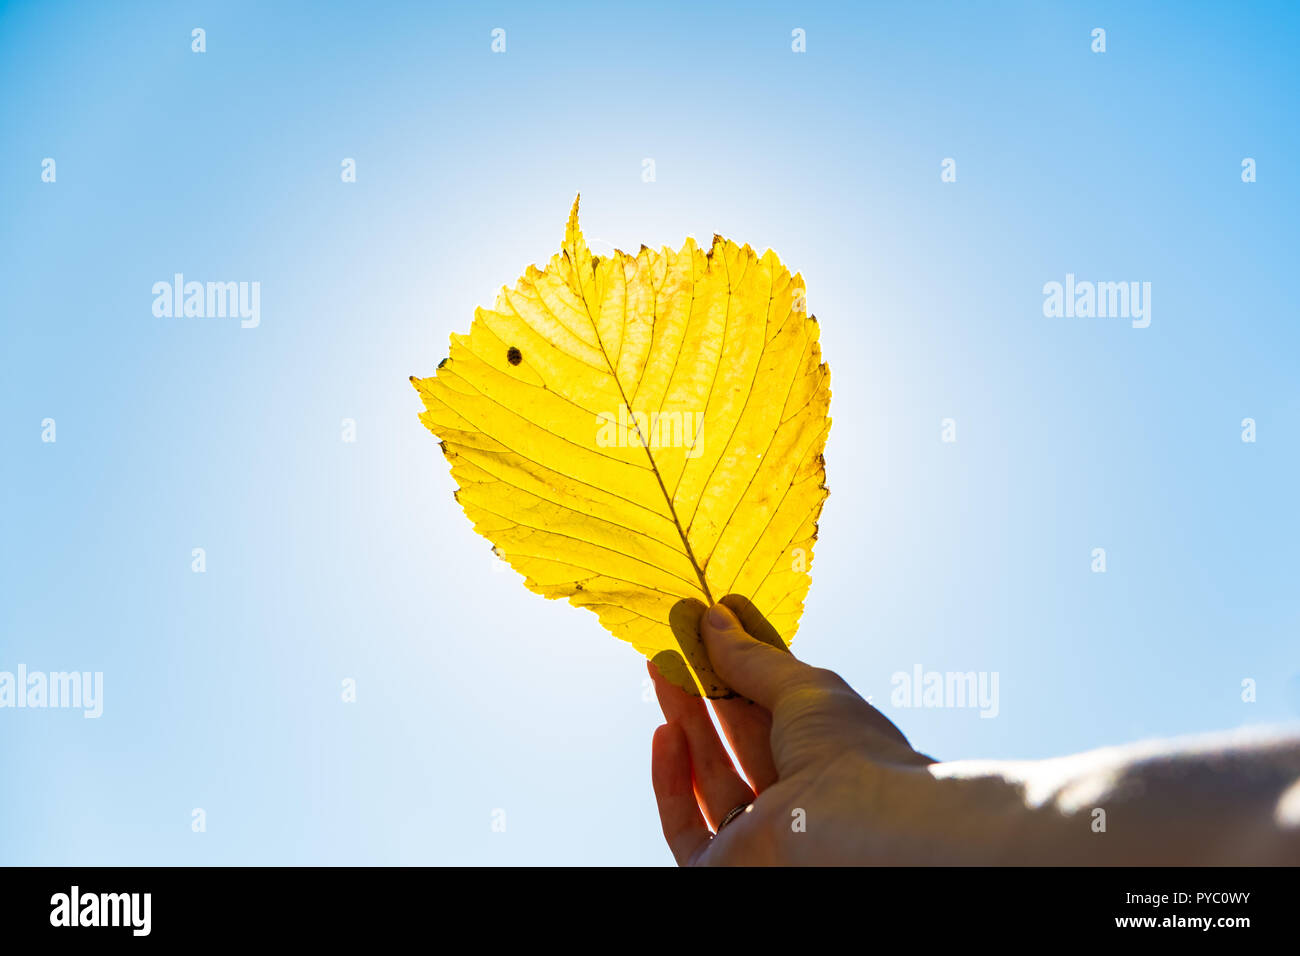 Estate Indiana concetto: autunno del sole che splende attraverso yellow leaf. Mano azienda fading photogrpahed foglia contro il sole Foto Stock